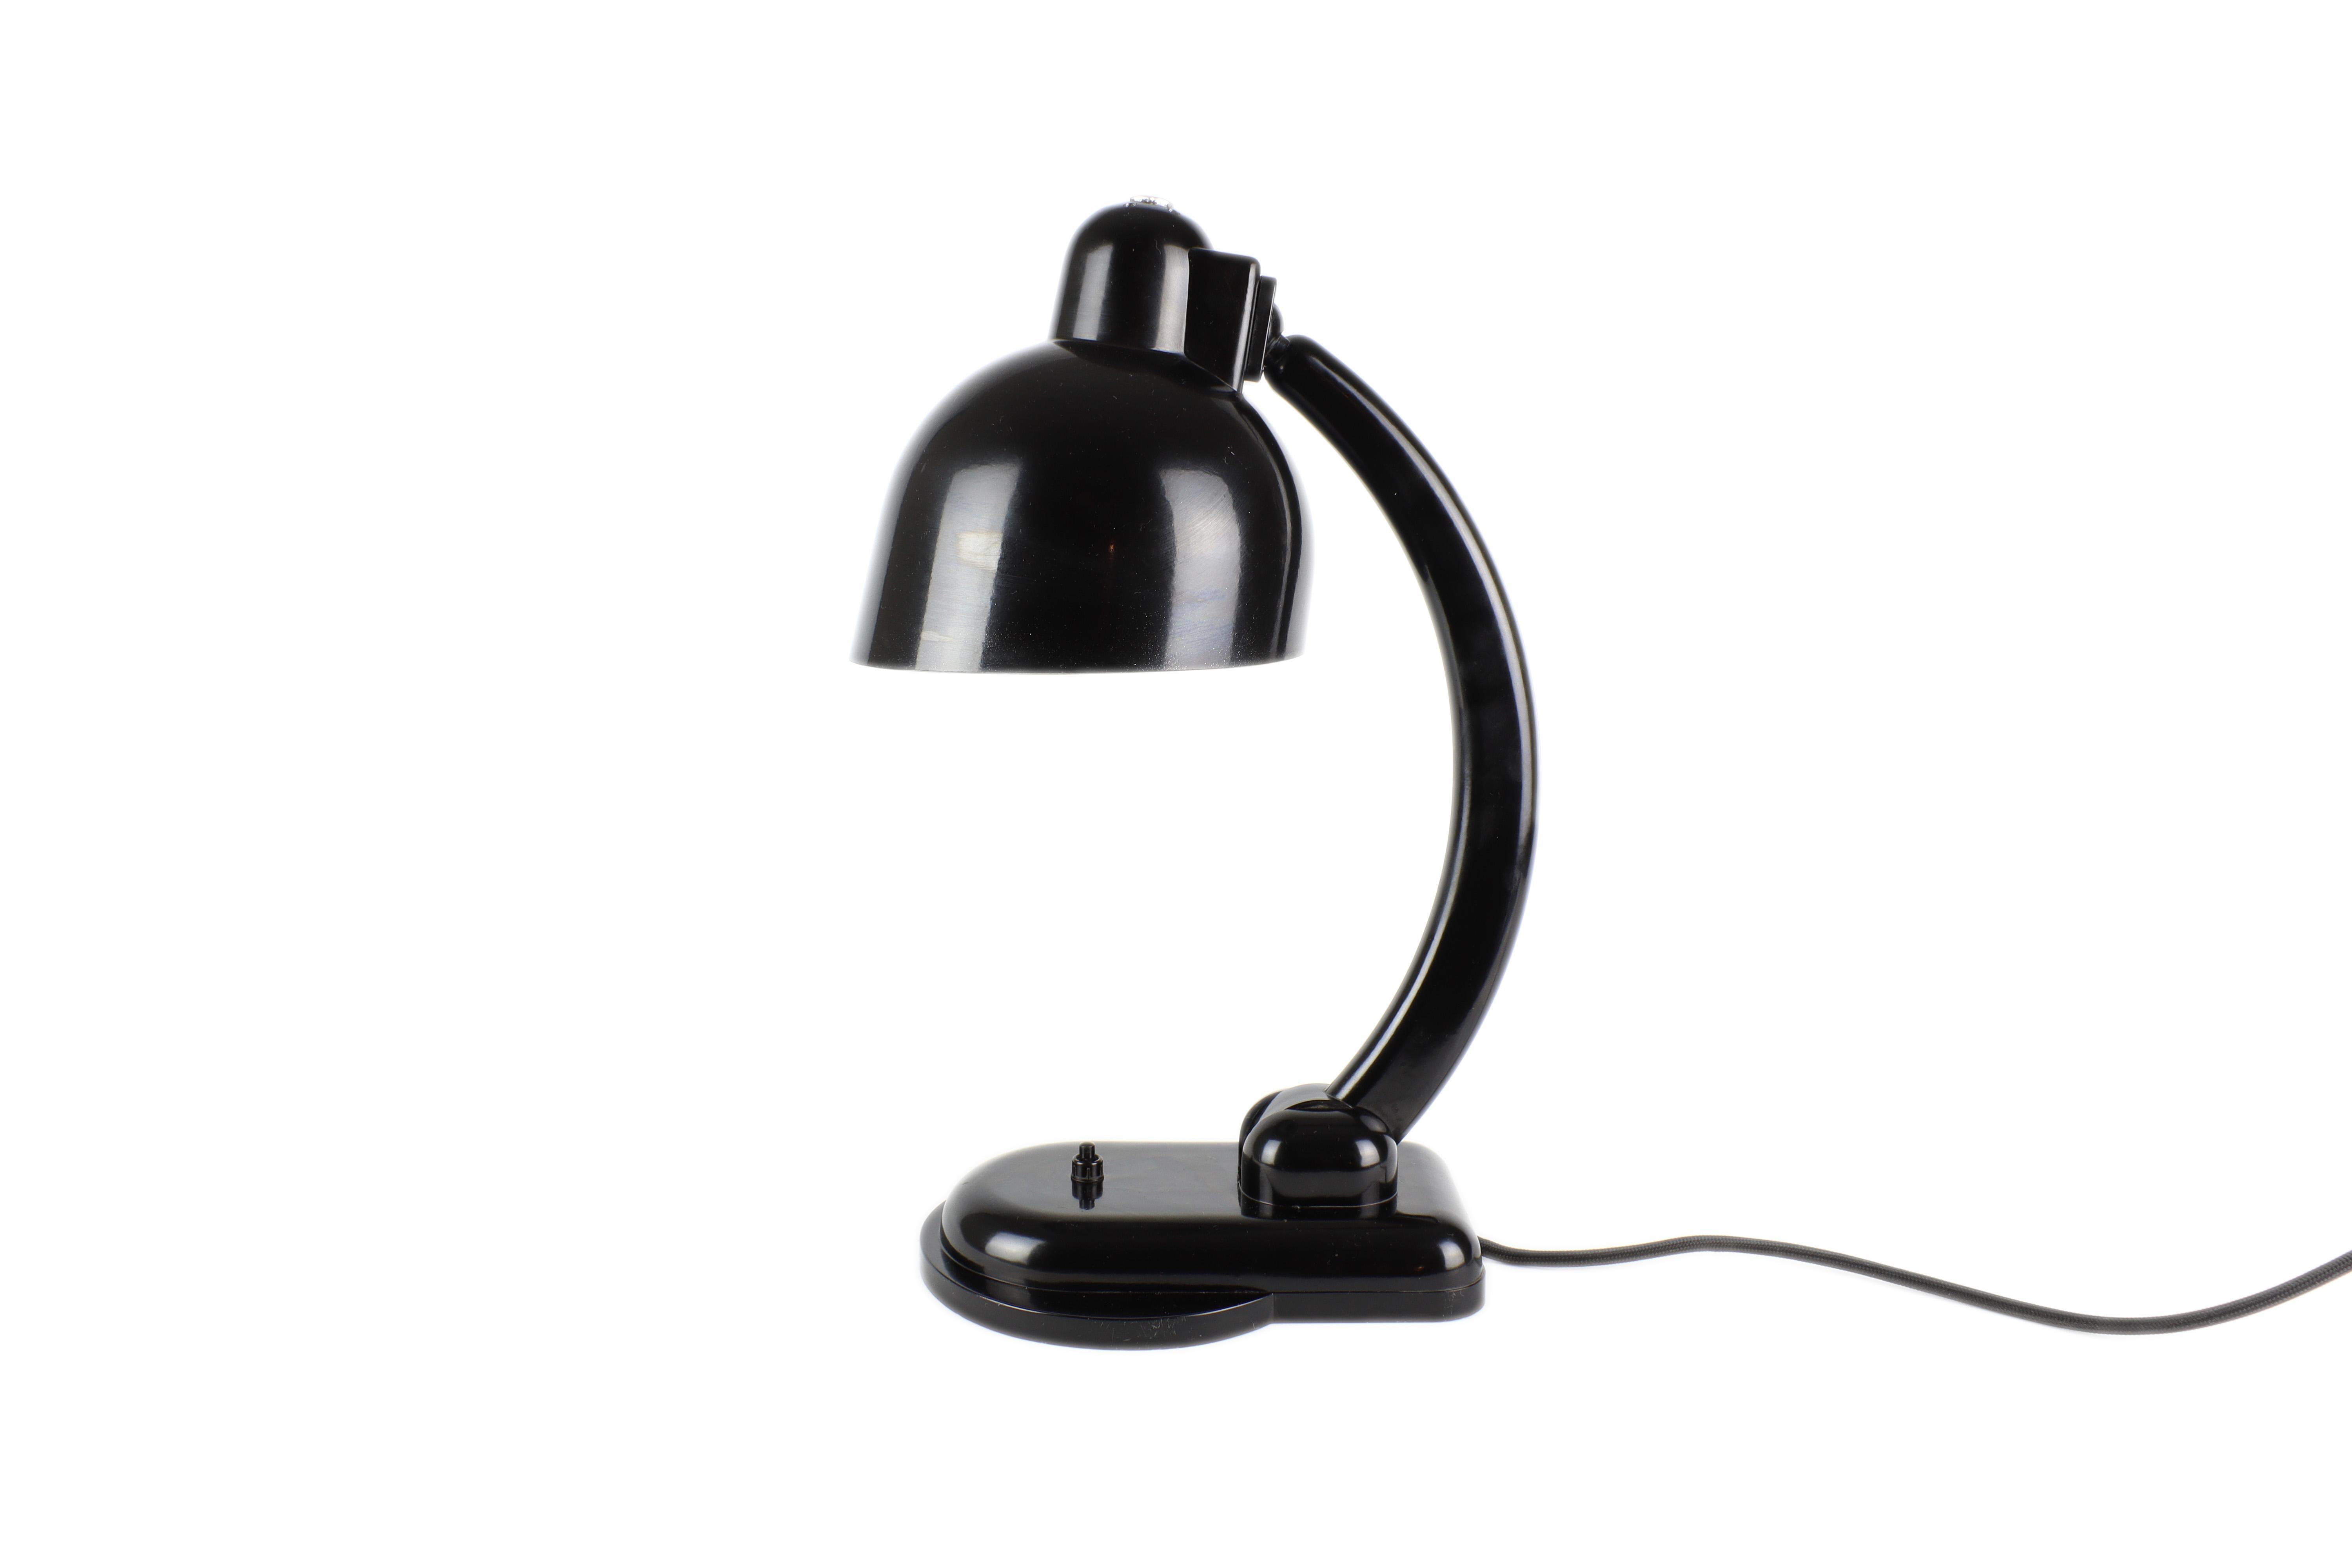 Diese sehr seltene Lampe wurde von dem weltberühmten Designer Christian Dell für die Heinrich Römmler AG in Deutschland entworfen. Die Leuchte ist mit einem Gelenkmechanismus ausgestattet, mit dem Sie die Richtung und Neigung des Lichts einstellen